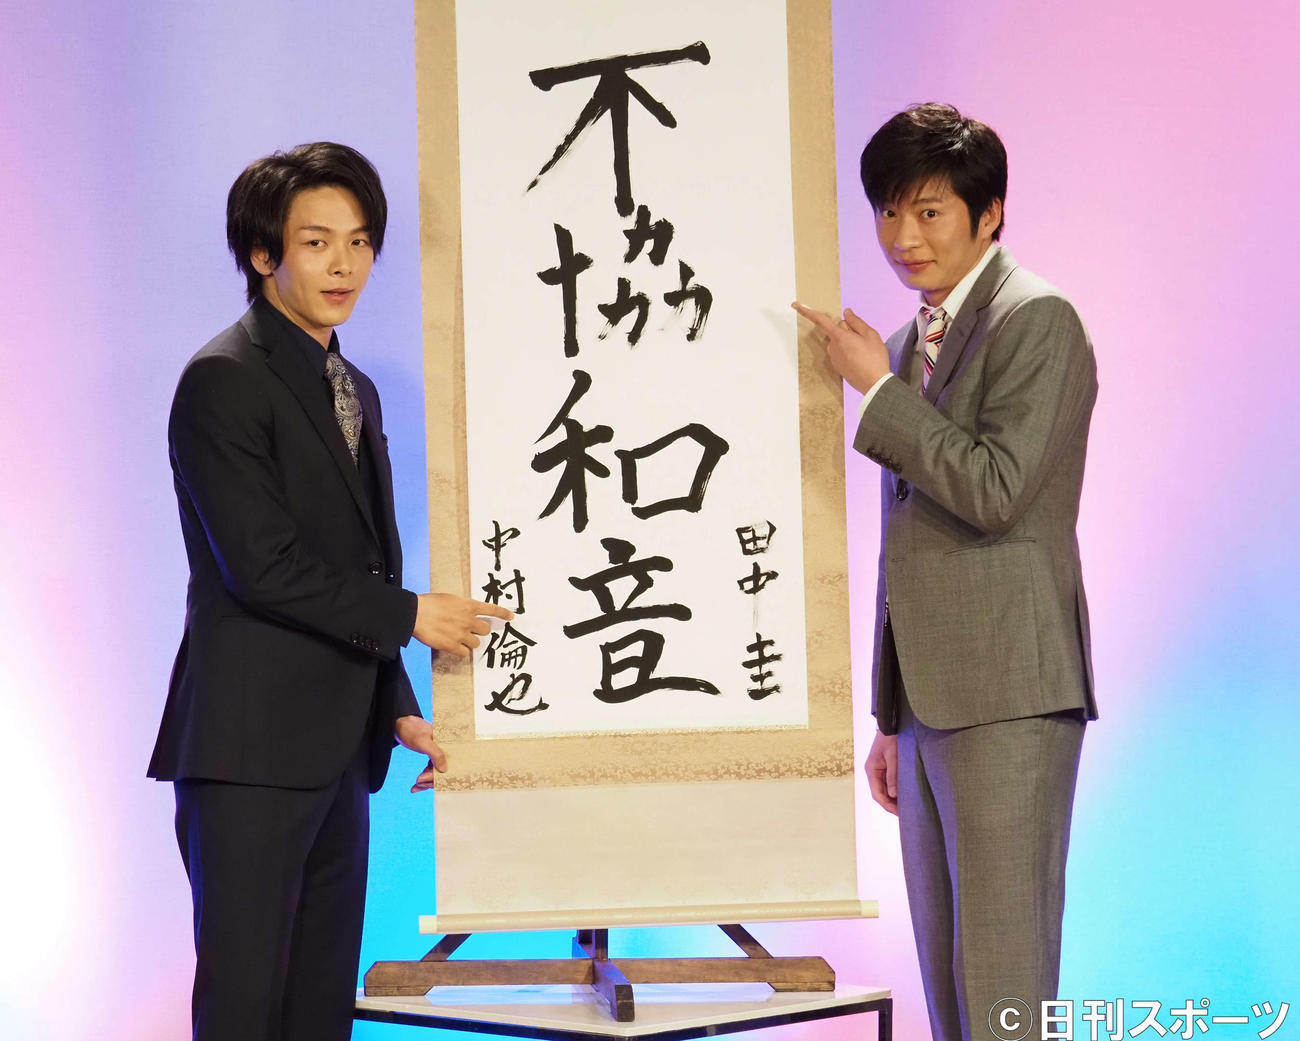 田中圭（左）が「不協」、中村倫也が「和音」を書いた掛け軸の前で記念撮影（撮影・遠藤尚子）